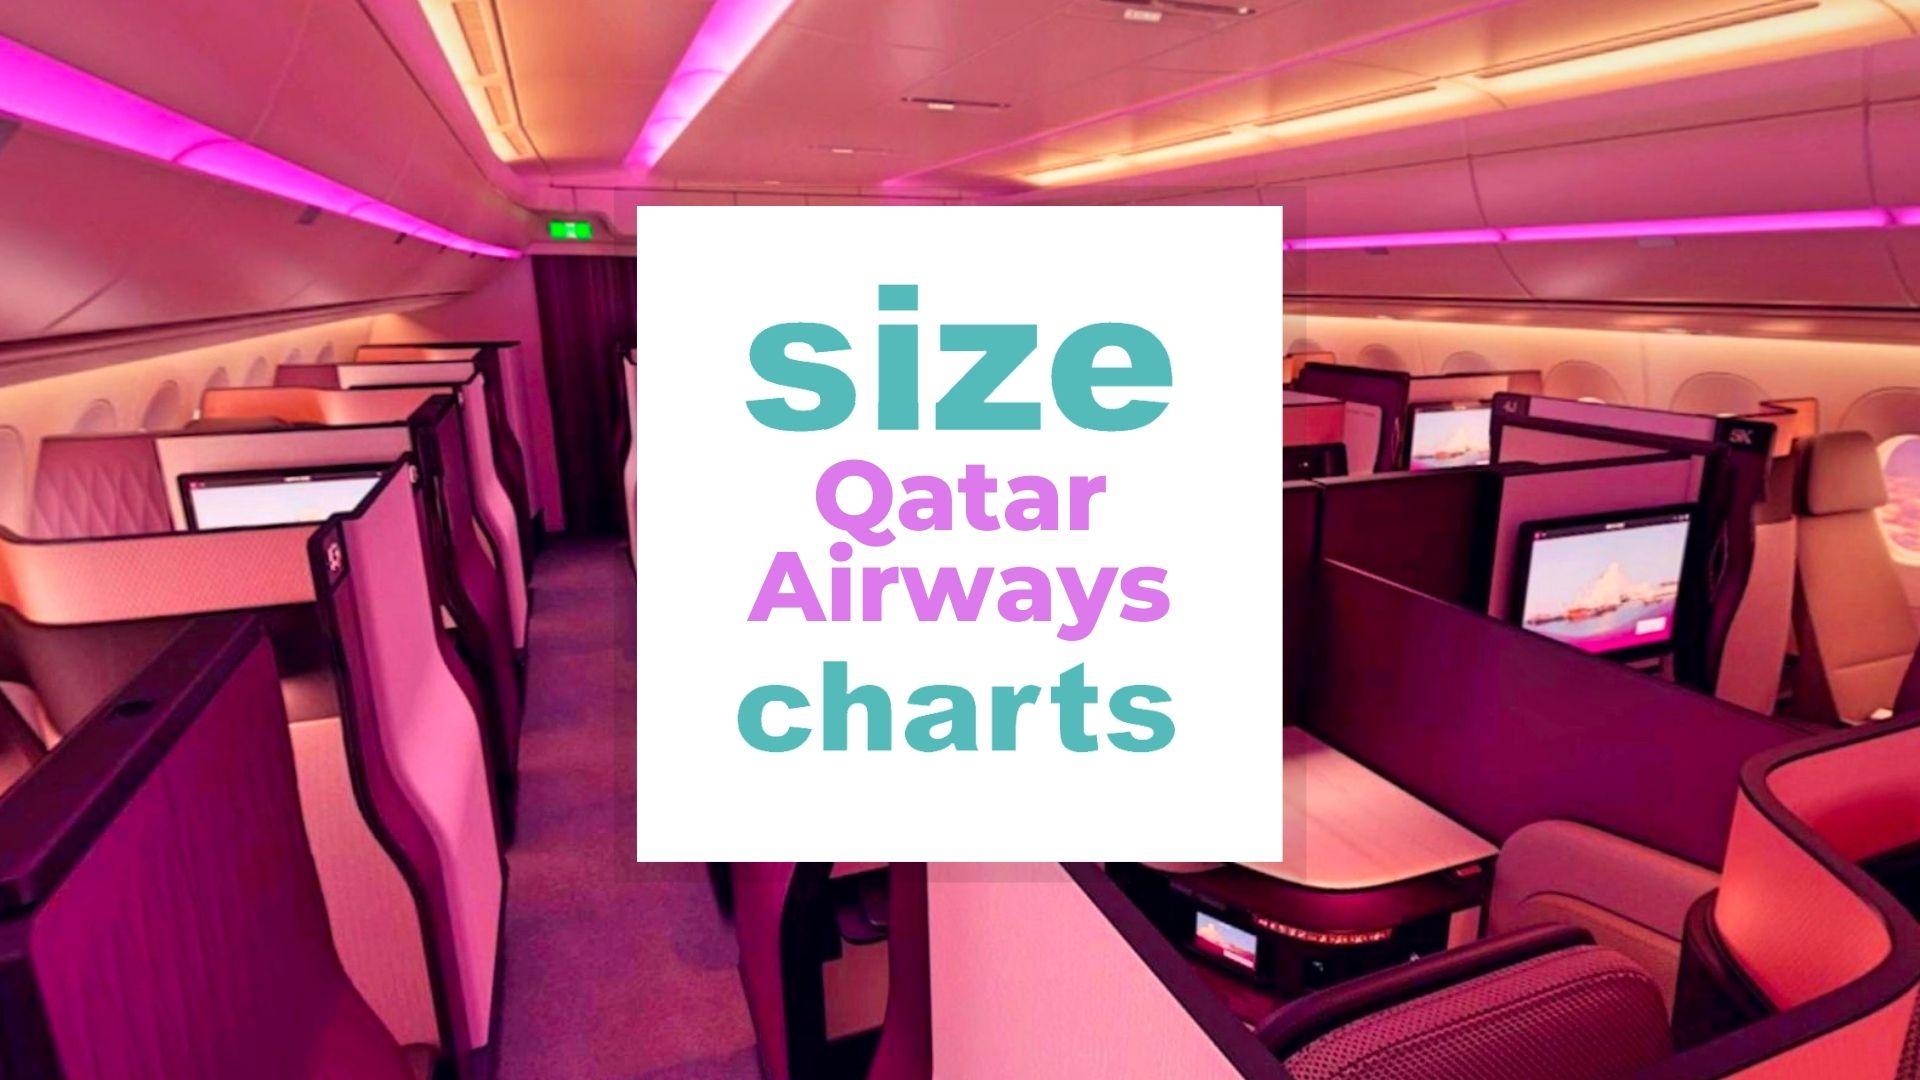 Qatar Airways Sizes Luggage, Seats... When size